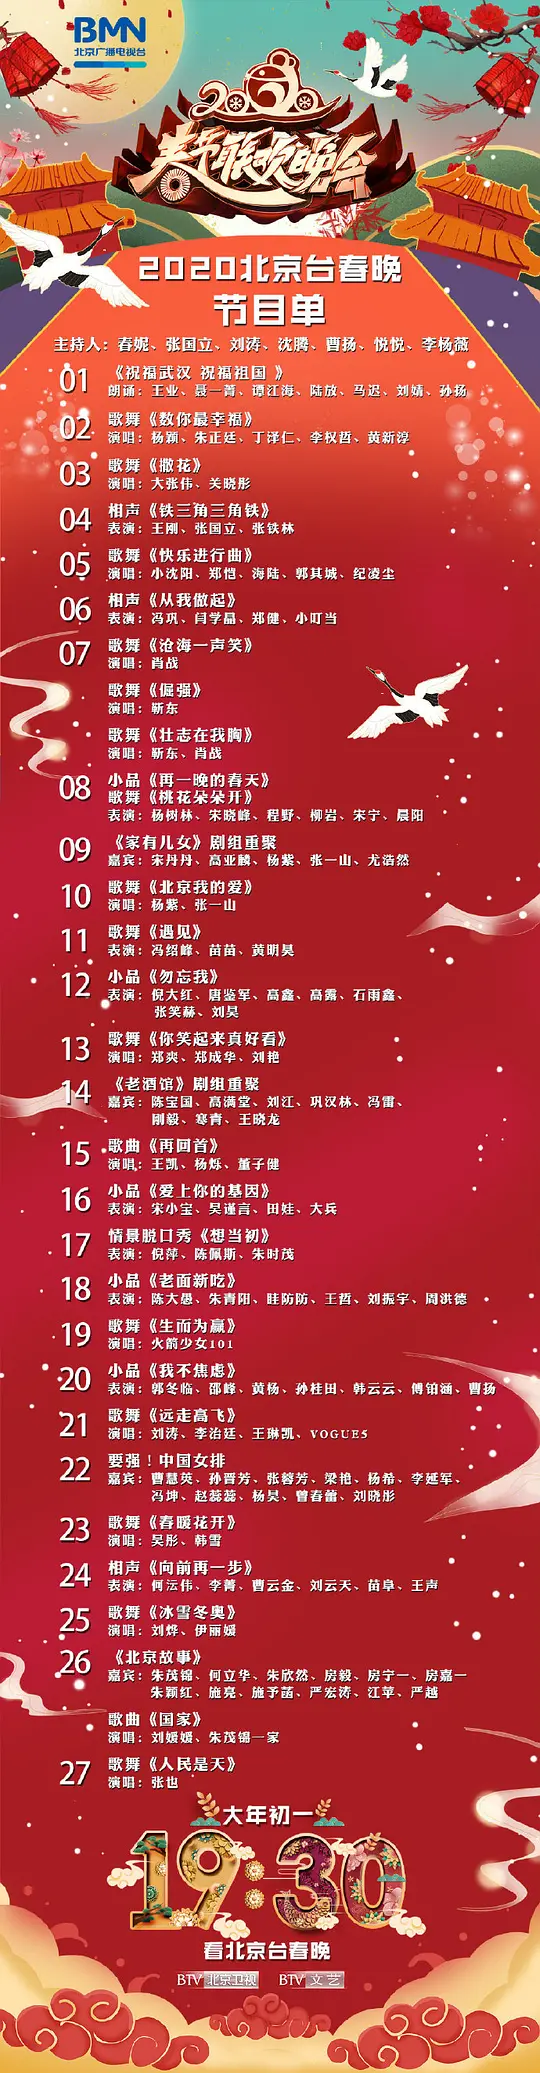 《2020年北京卫视春节联欢晚会》免费在线观看